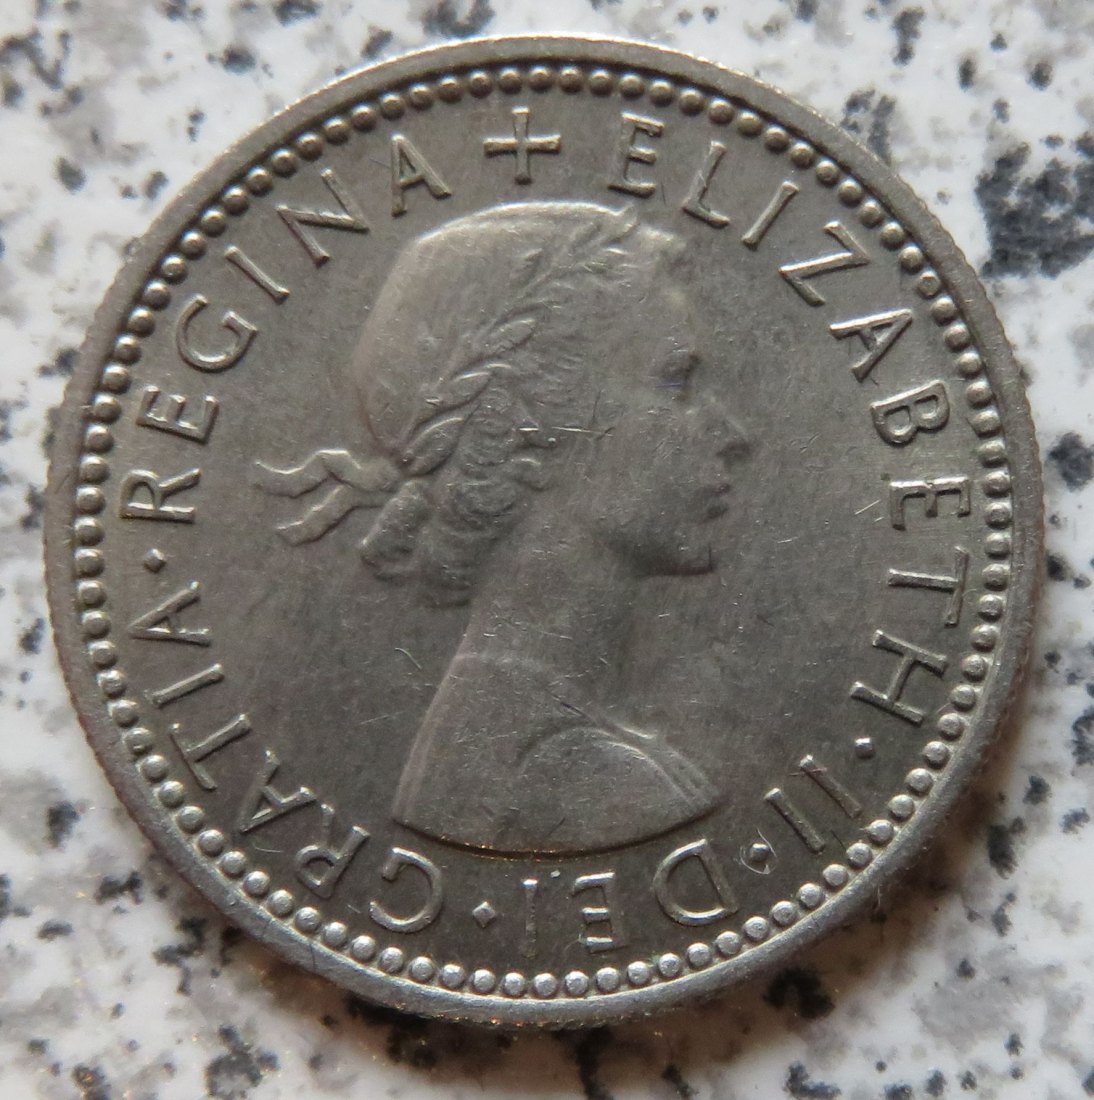  Großbritannien 6 Pence 1958, funz/unz   